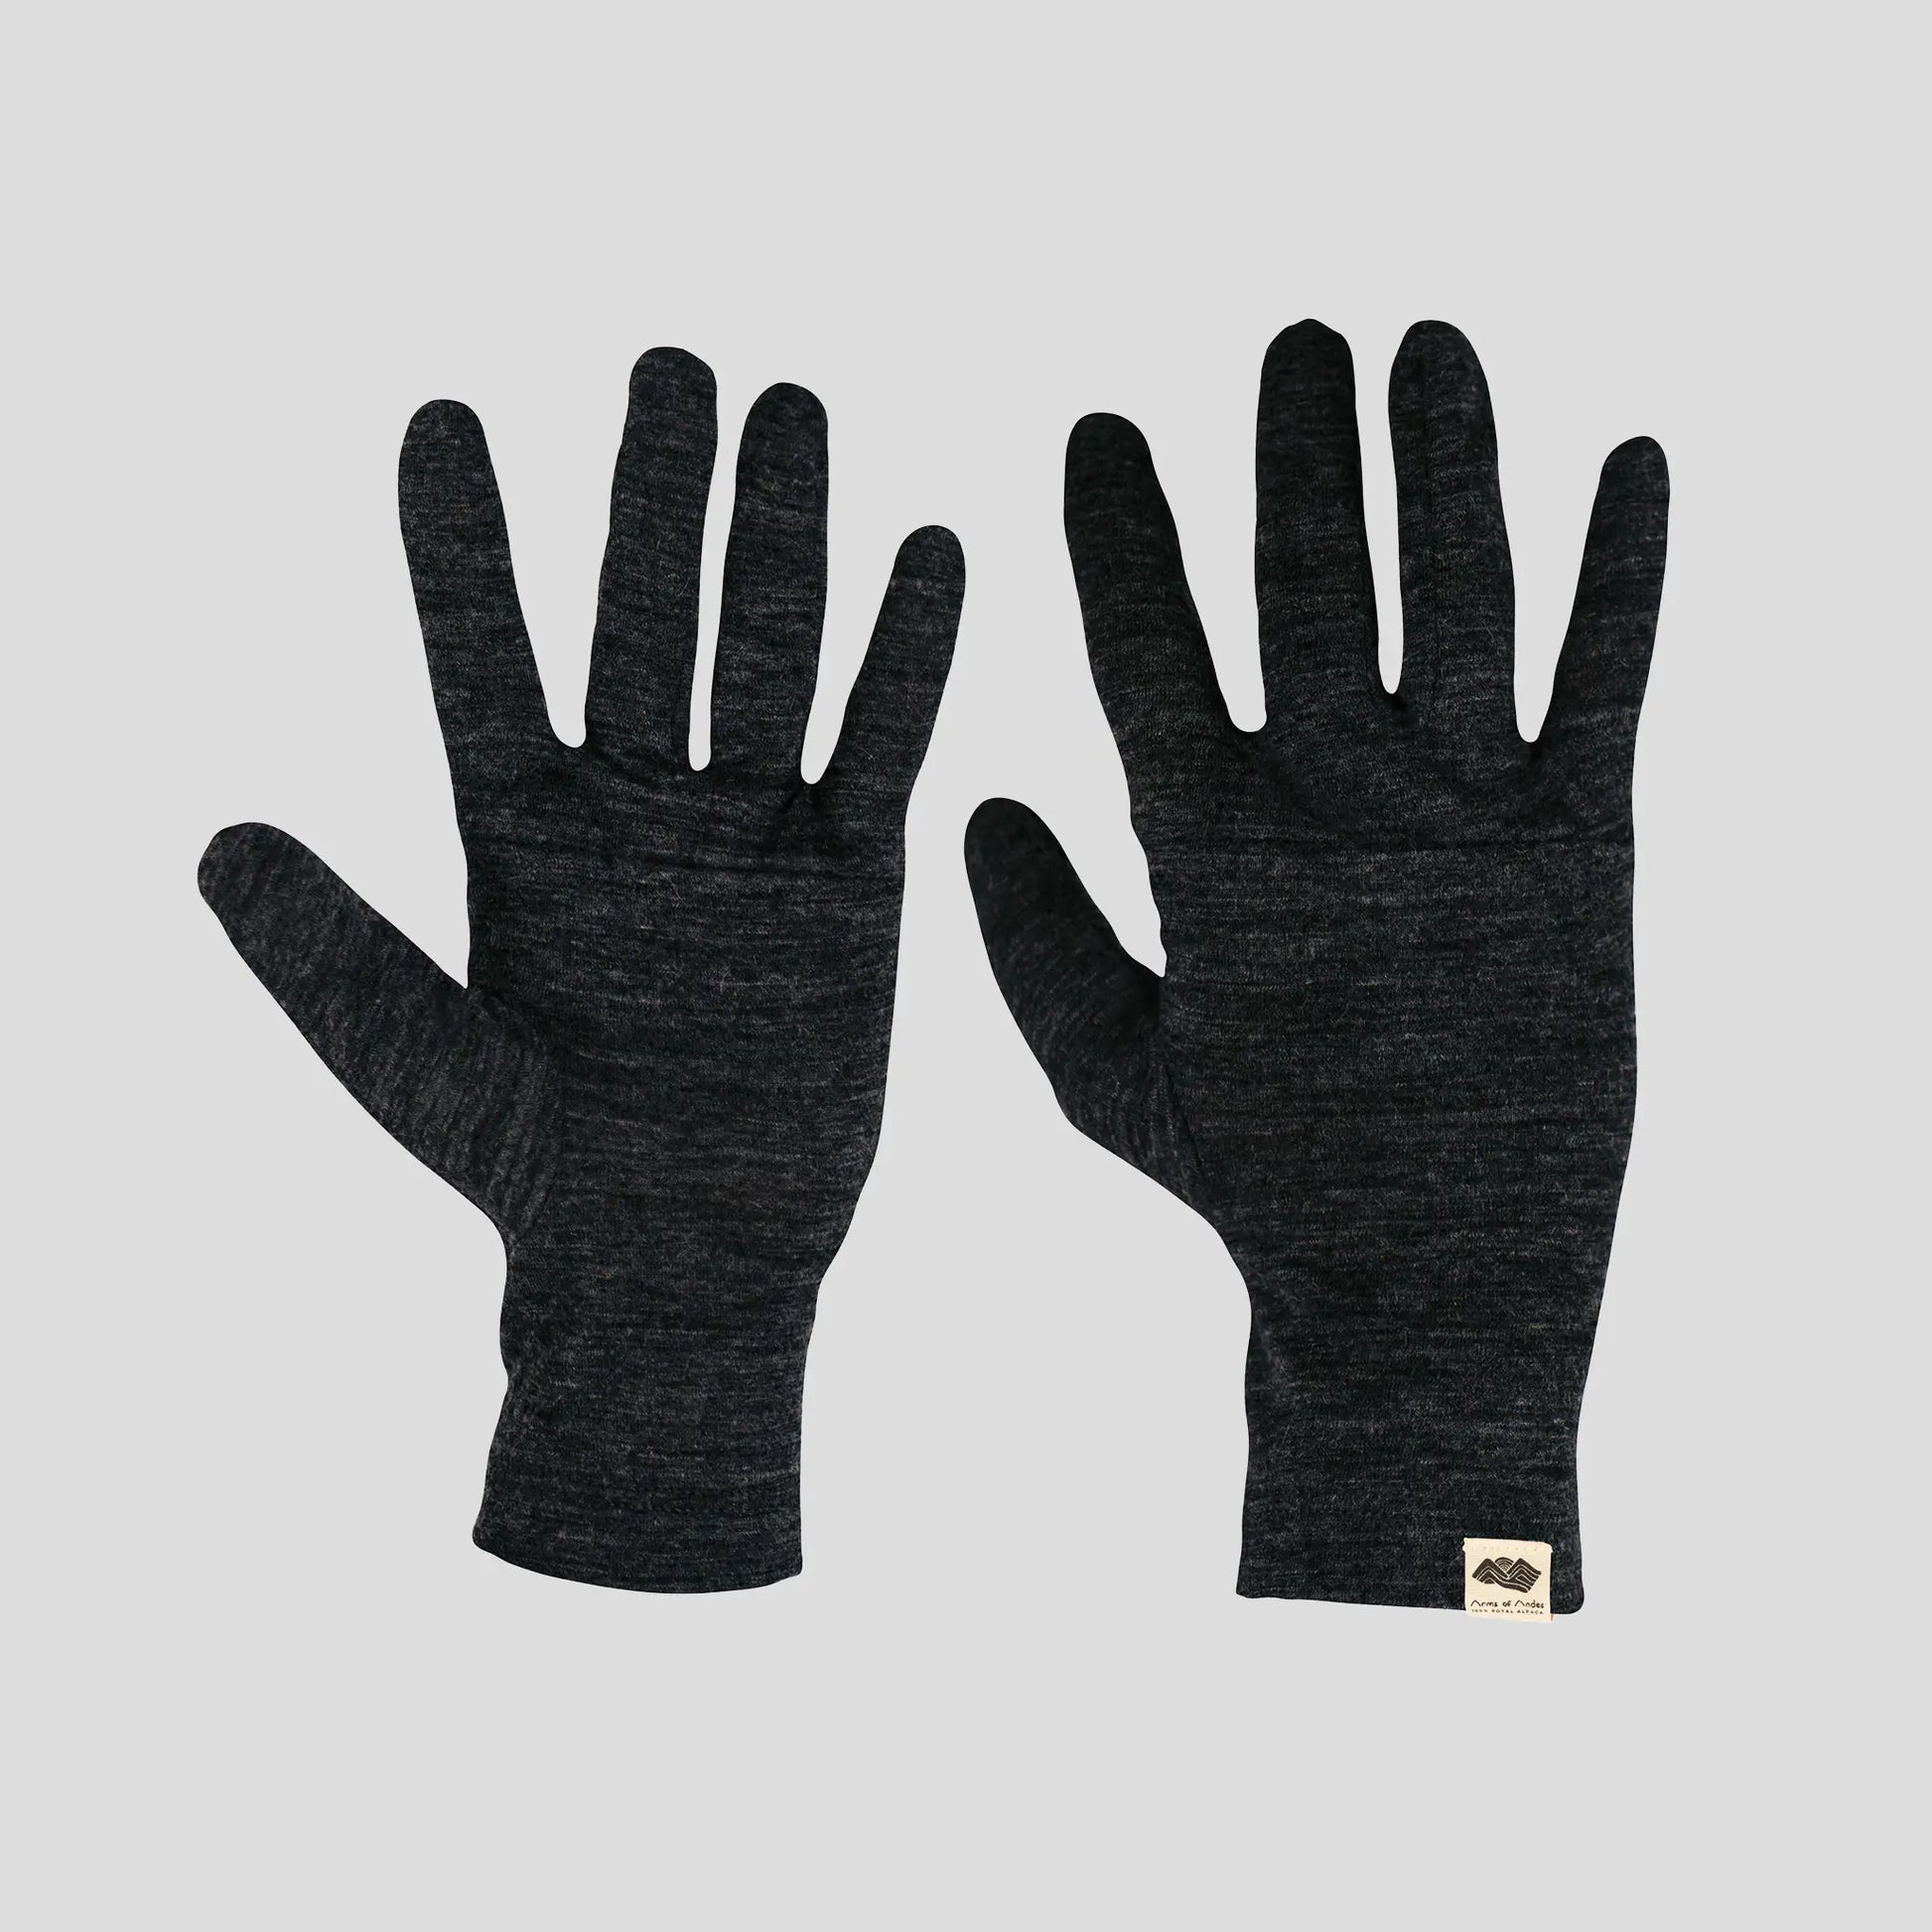 POLARTEC LINER: warm 1st Layer gloves